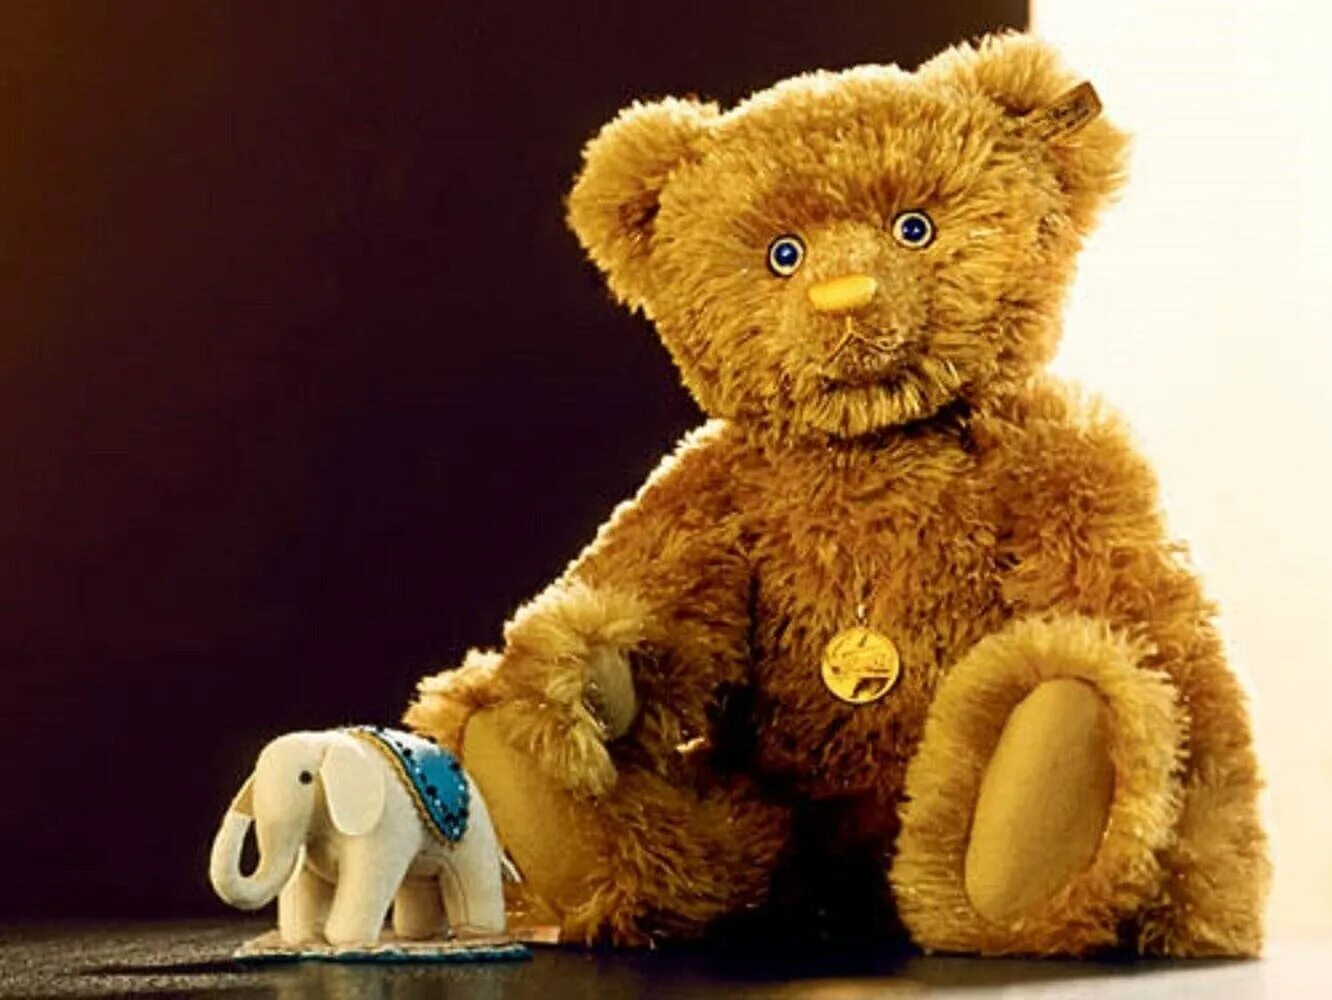 Плюшевый медведь Steiff Teddy Bear. Плюшевый медведь Steiff Louis Vuitton. Дорогие мягкие игрушки.